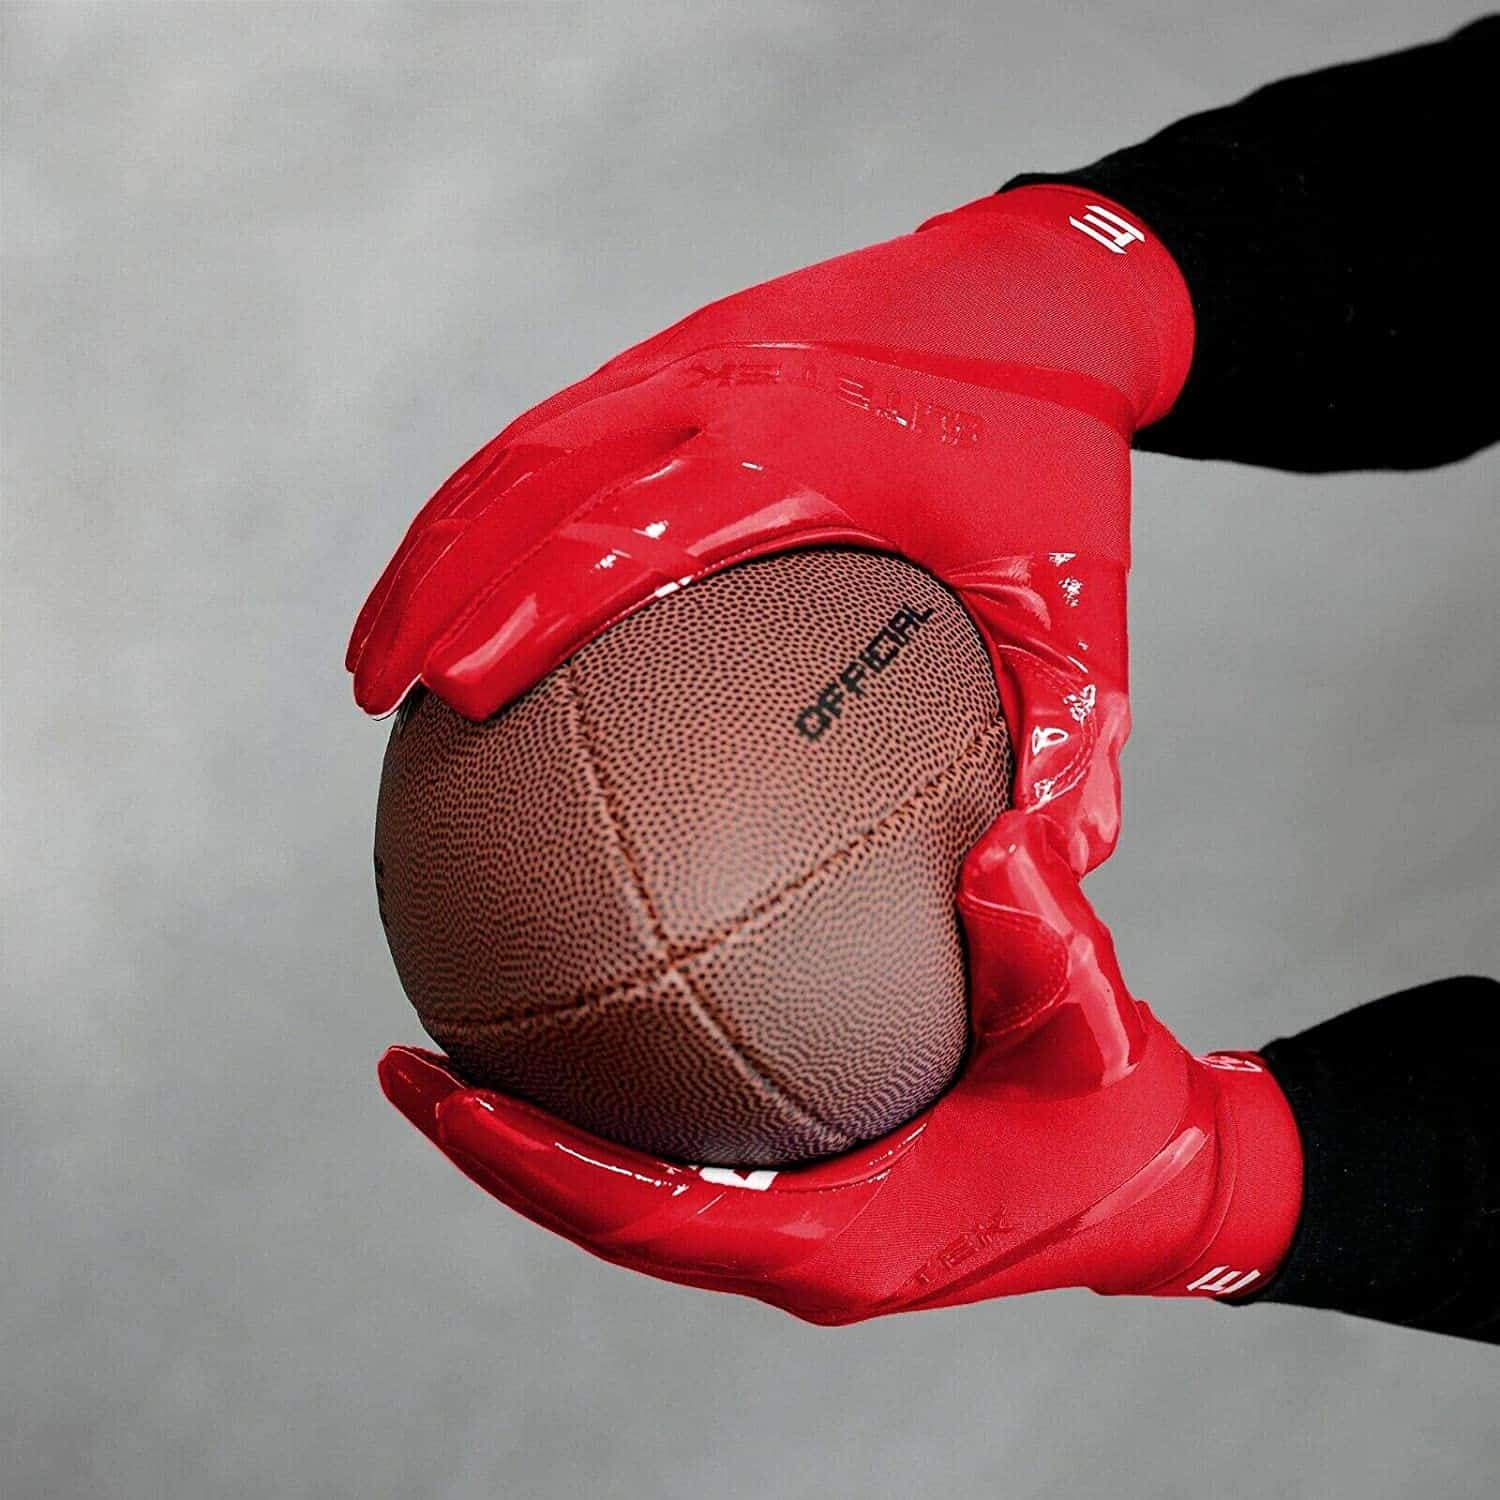 ถุงมืออเมริกันฟุตบอลที่ปรับแต่งได้ดีที่สุด - EliteTek RG-14 ถุงมือฟุตบอลกระชับแน่นพิเศษพร้อมลูกบอล